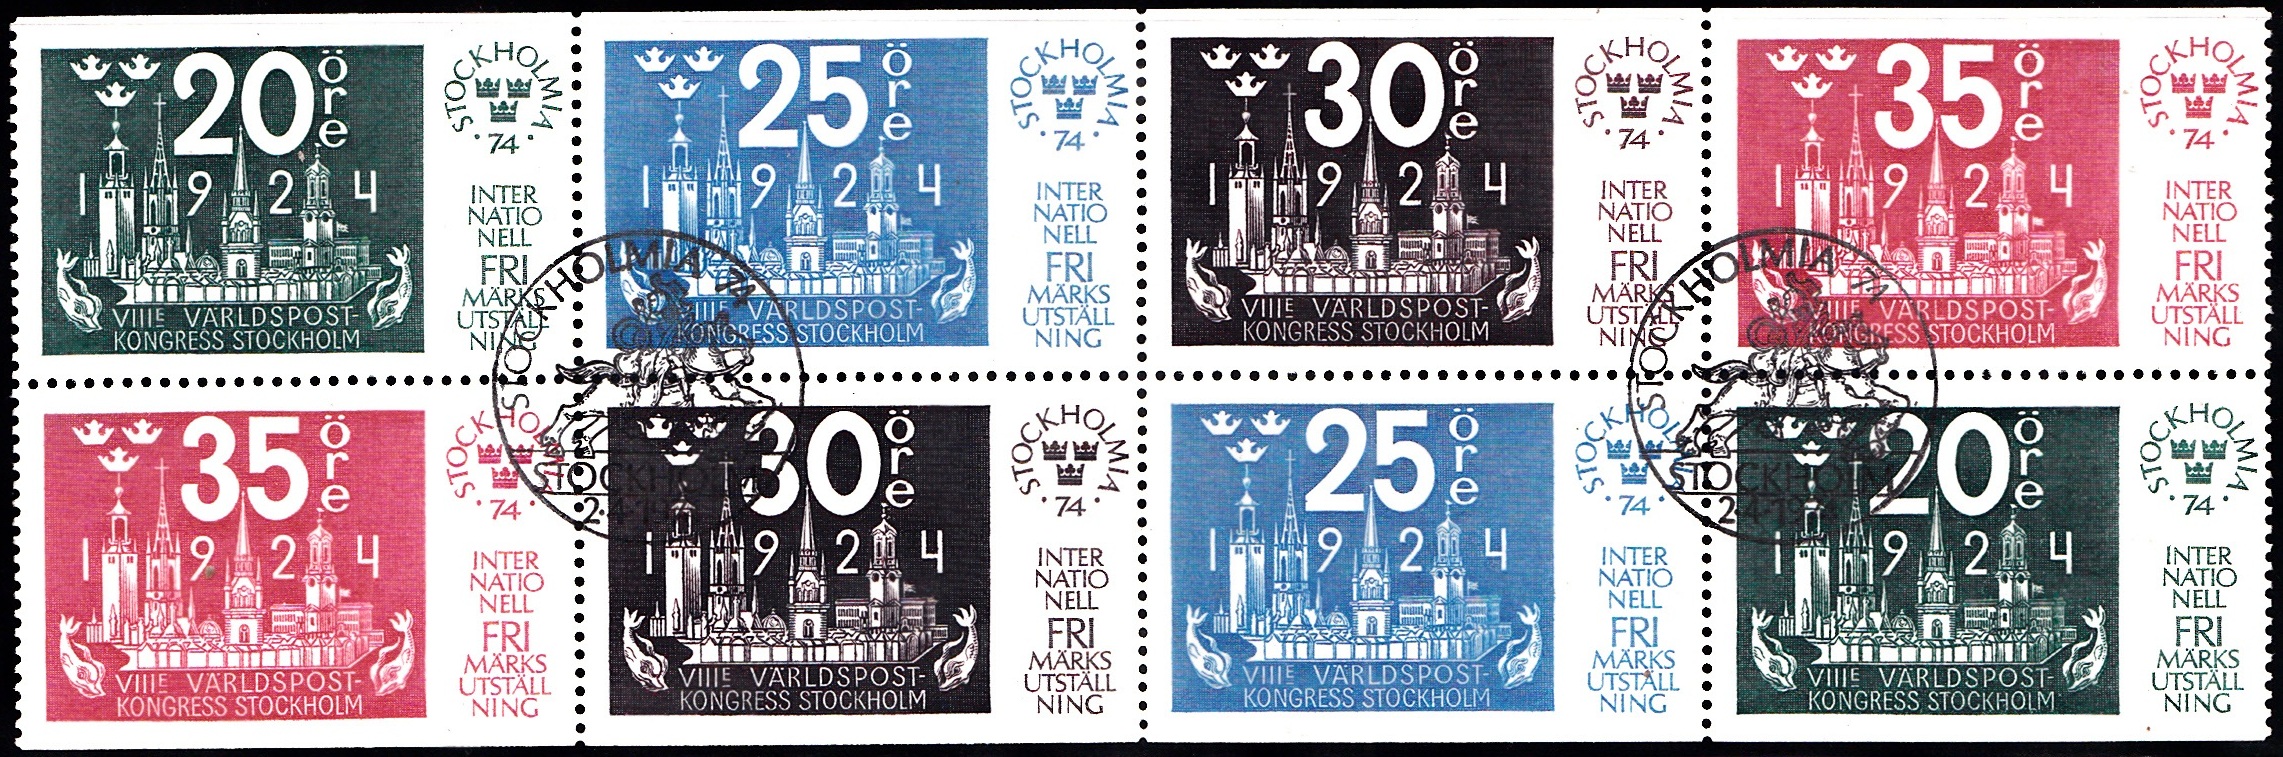 1041-1044 Stockholmia 74 [Philatelic Exhibition] Sweden Stamp Booklet Pane